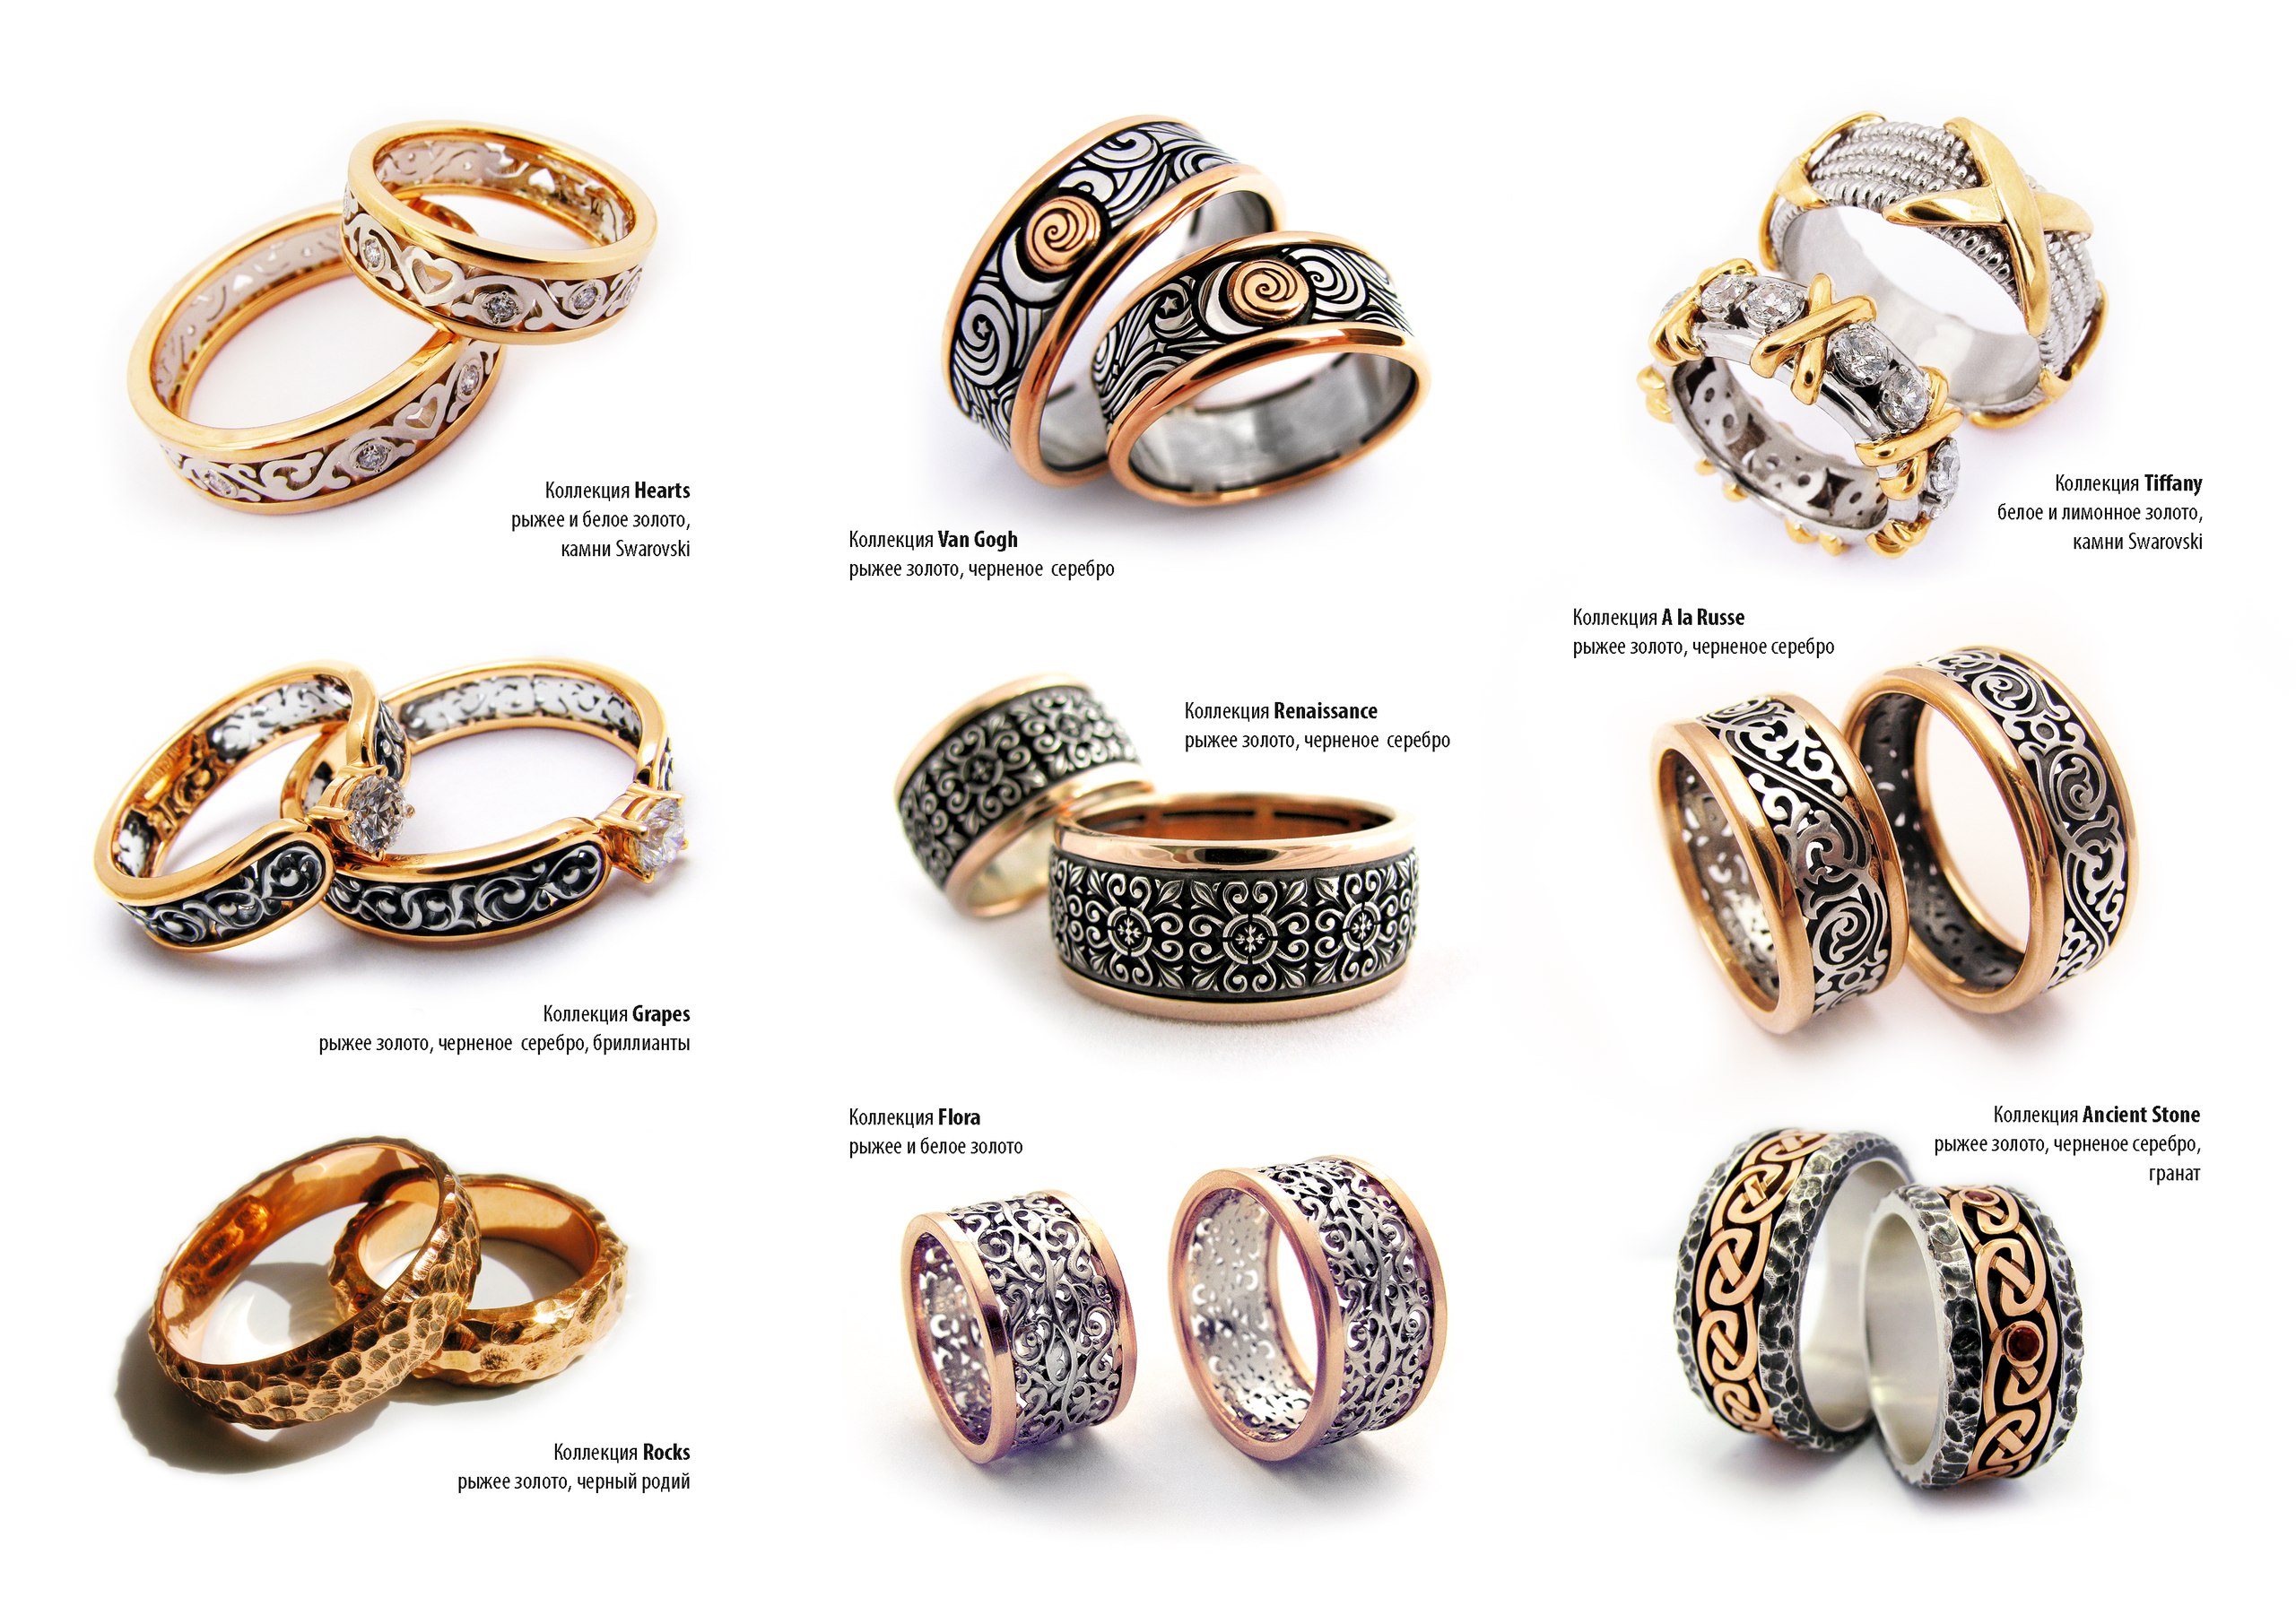 Снижаем цену на обручальные кольца, сохраняя уникальность и качество